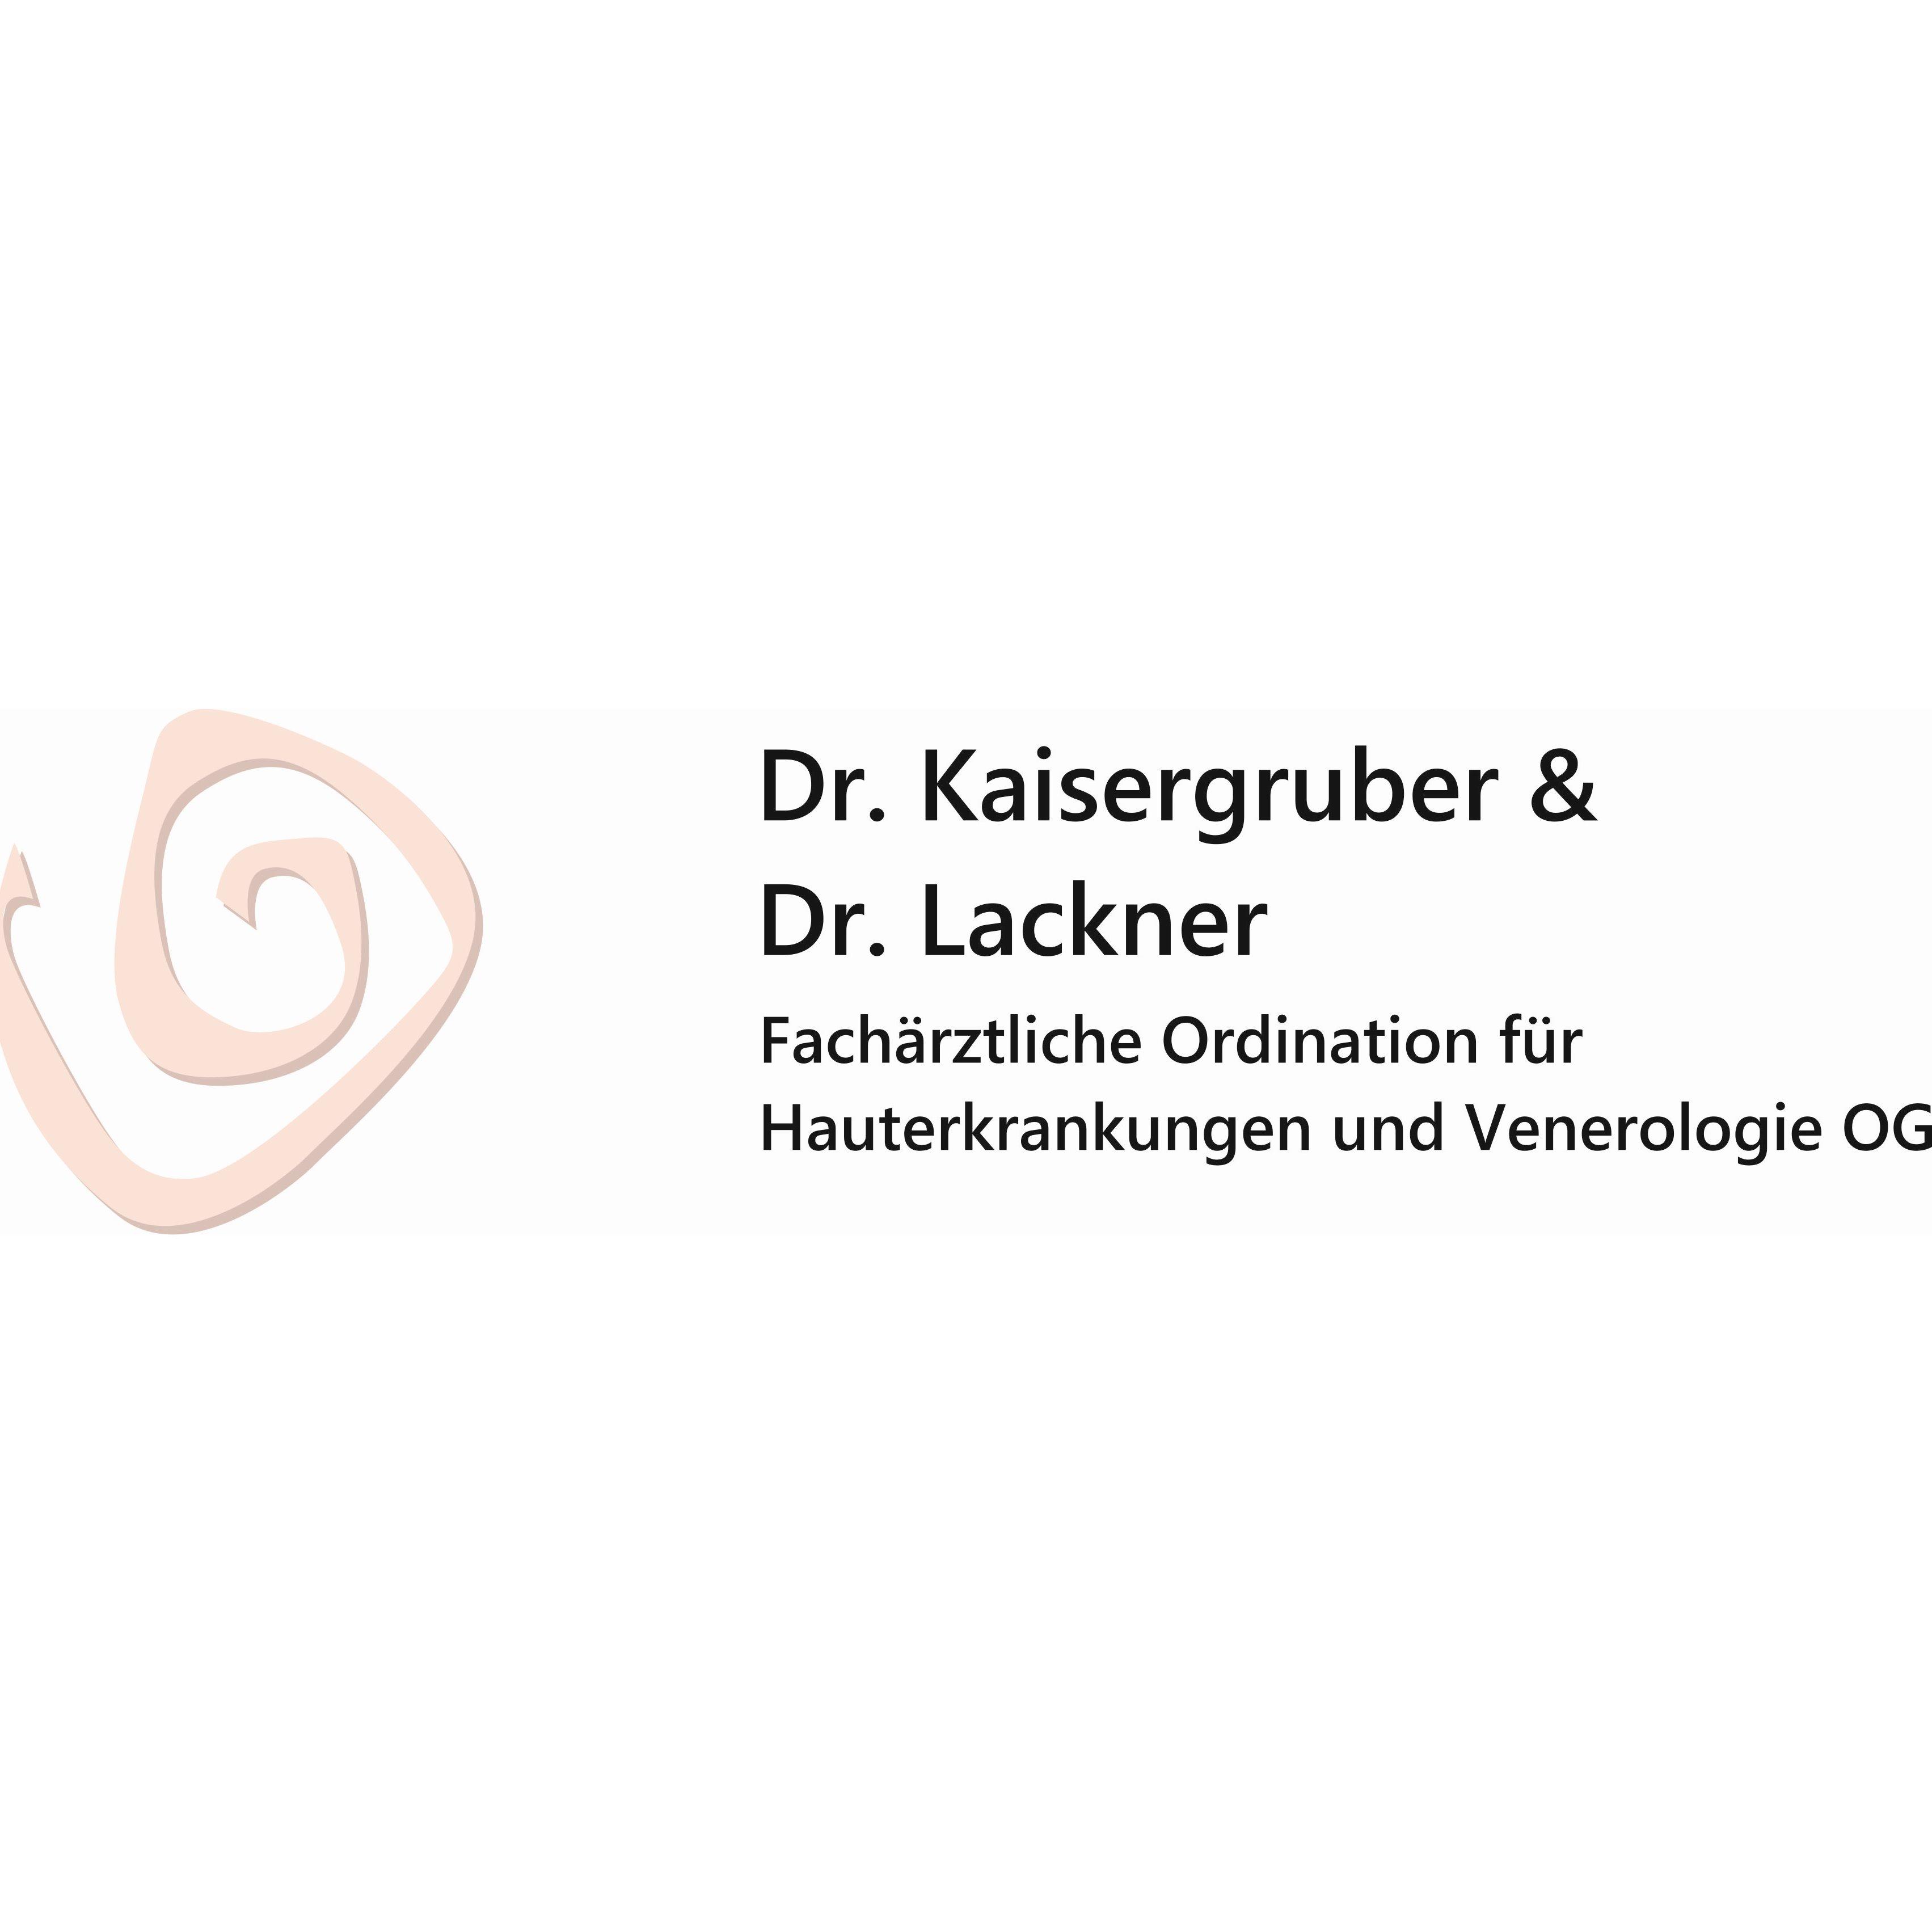 Dr. Kaisergruber & Dr. Lackner  Fachärztliche Ordination für